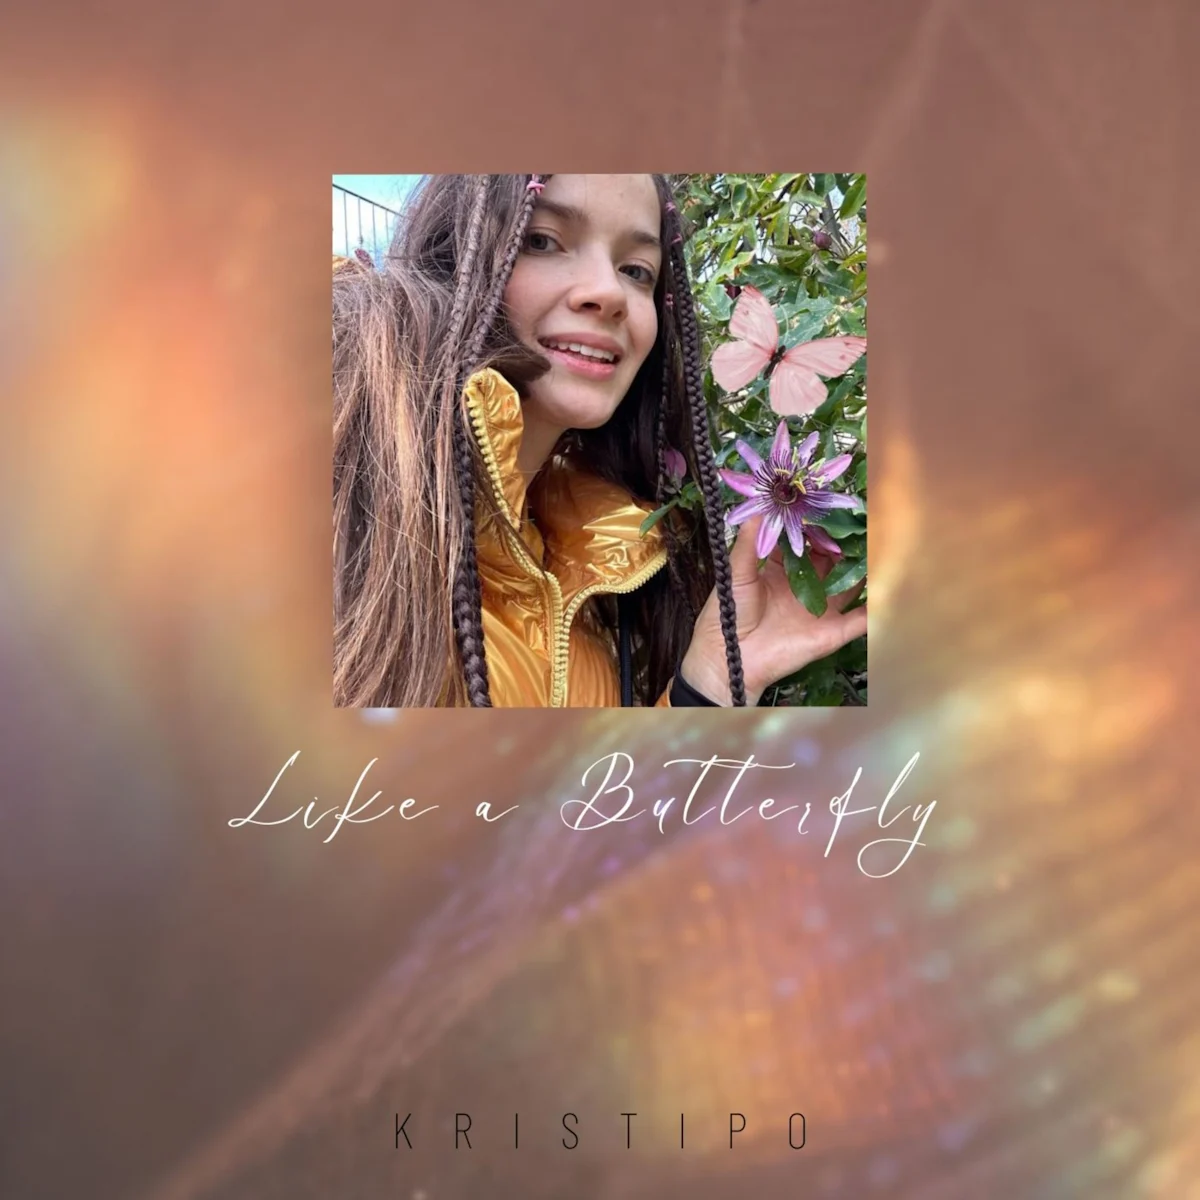 KristiPo: venerdì 16 febbraio esce in radio e in digitale “LIKE A BUTTERFLY” il nuovo singolo